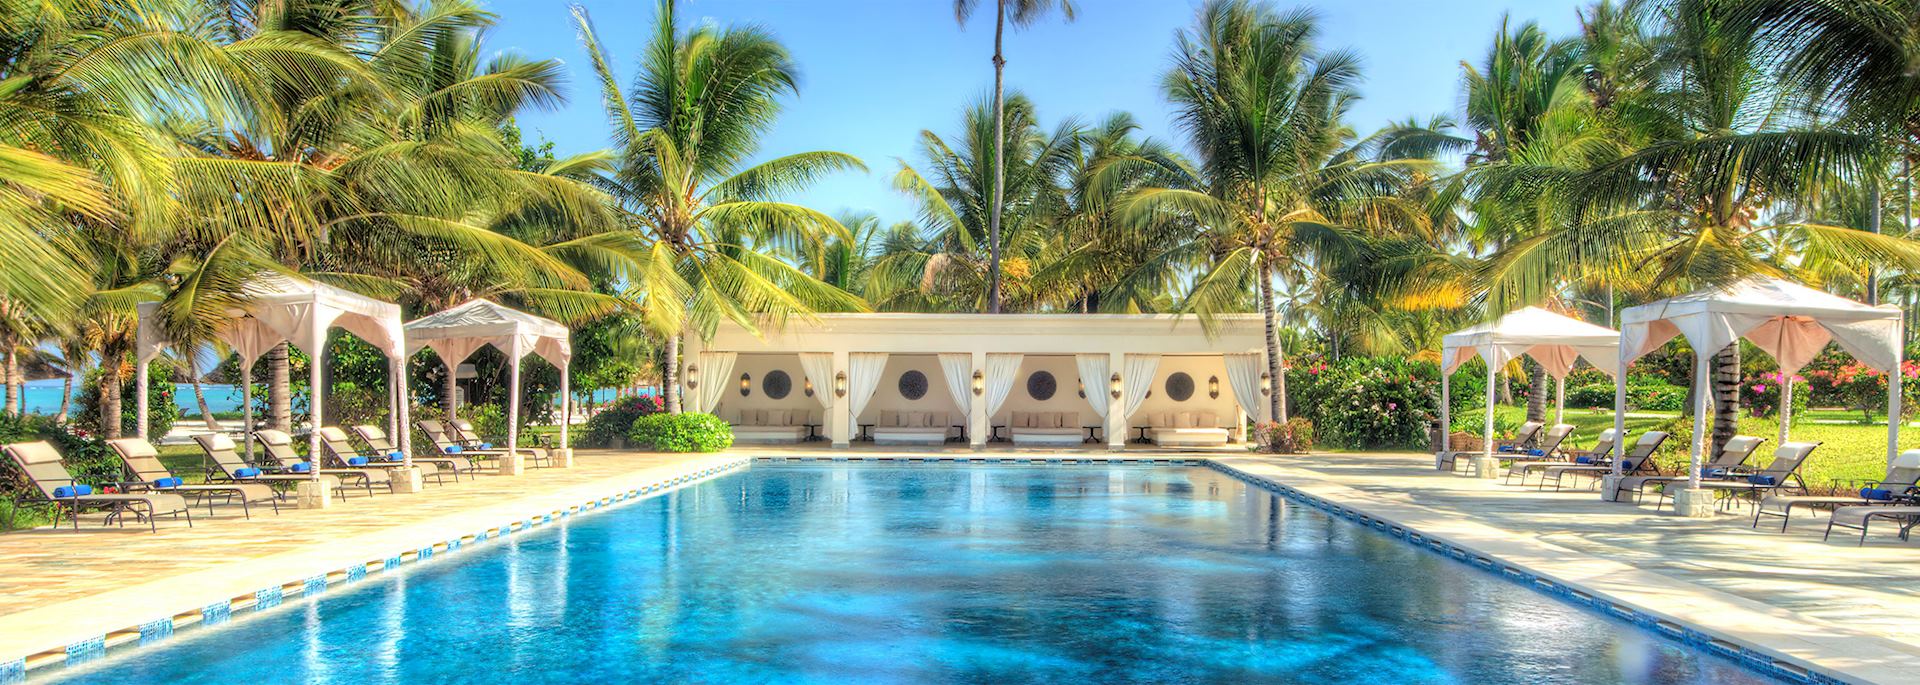 Baraza Resort & Spa, Zanzibar Island